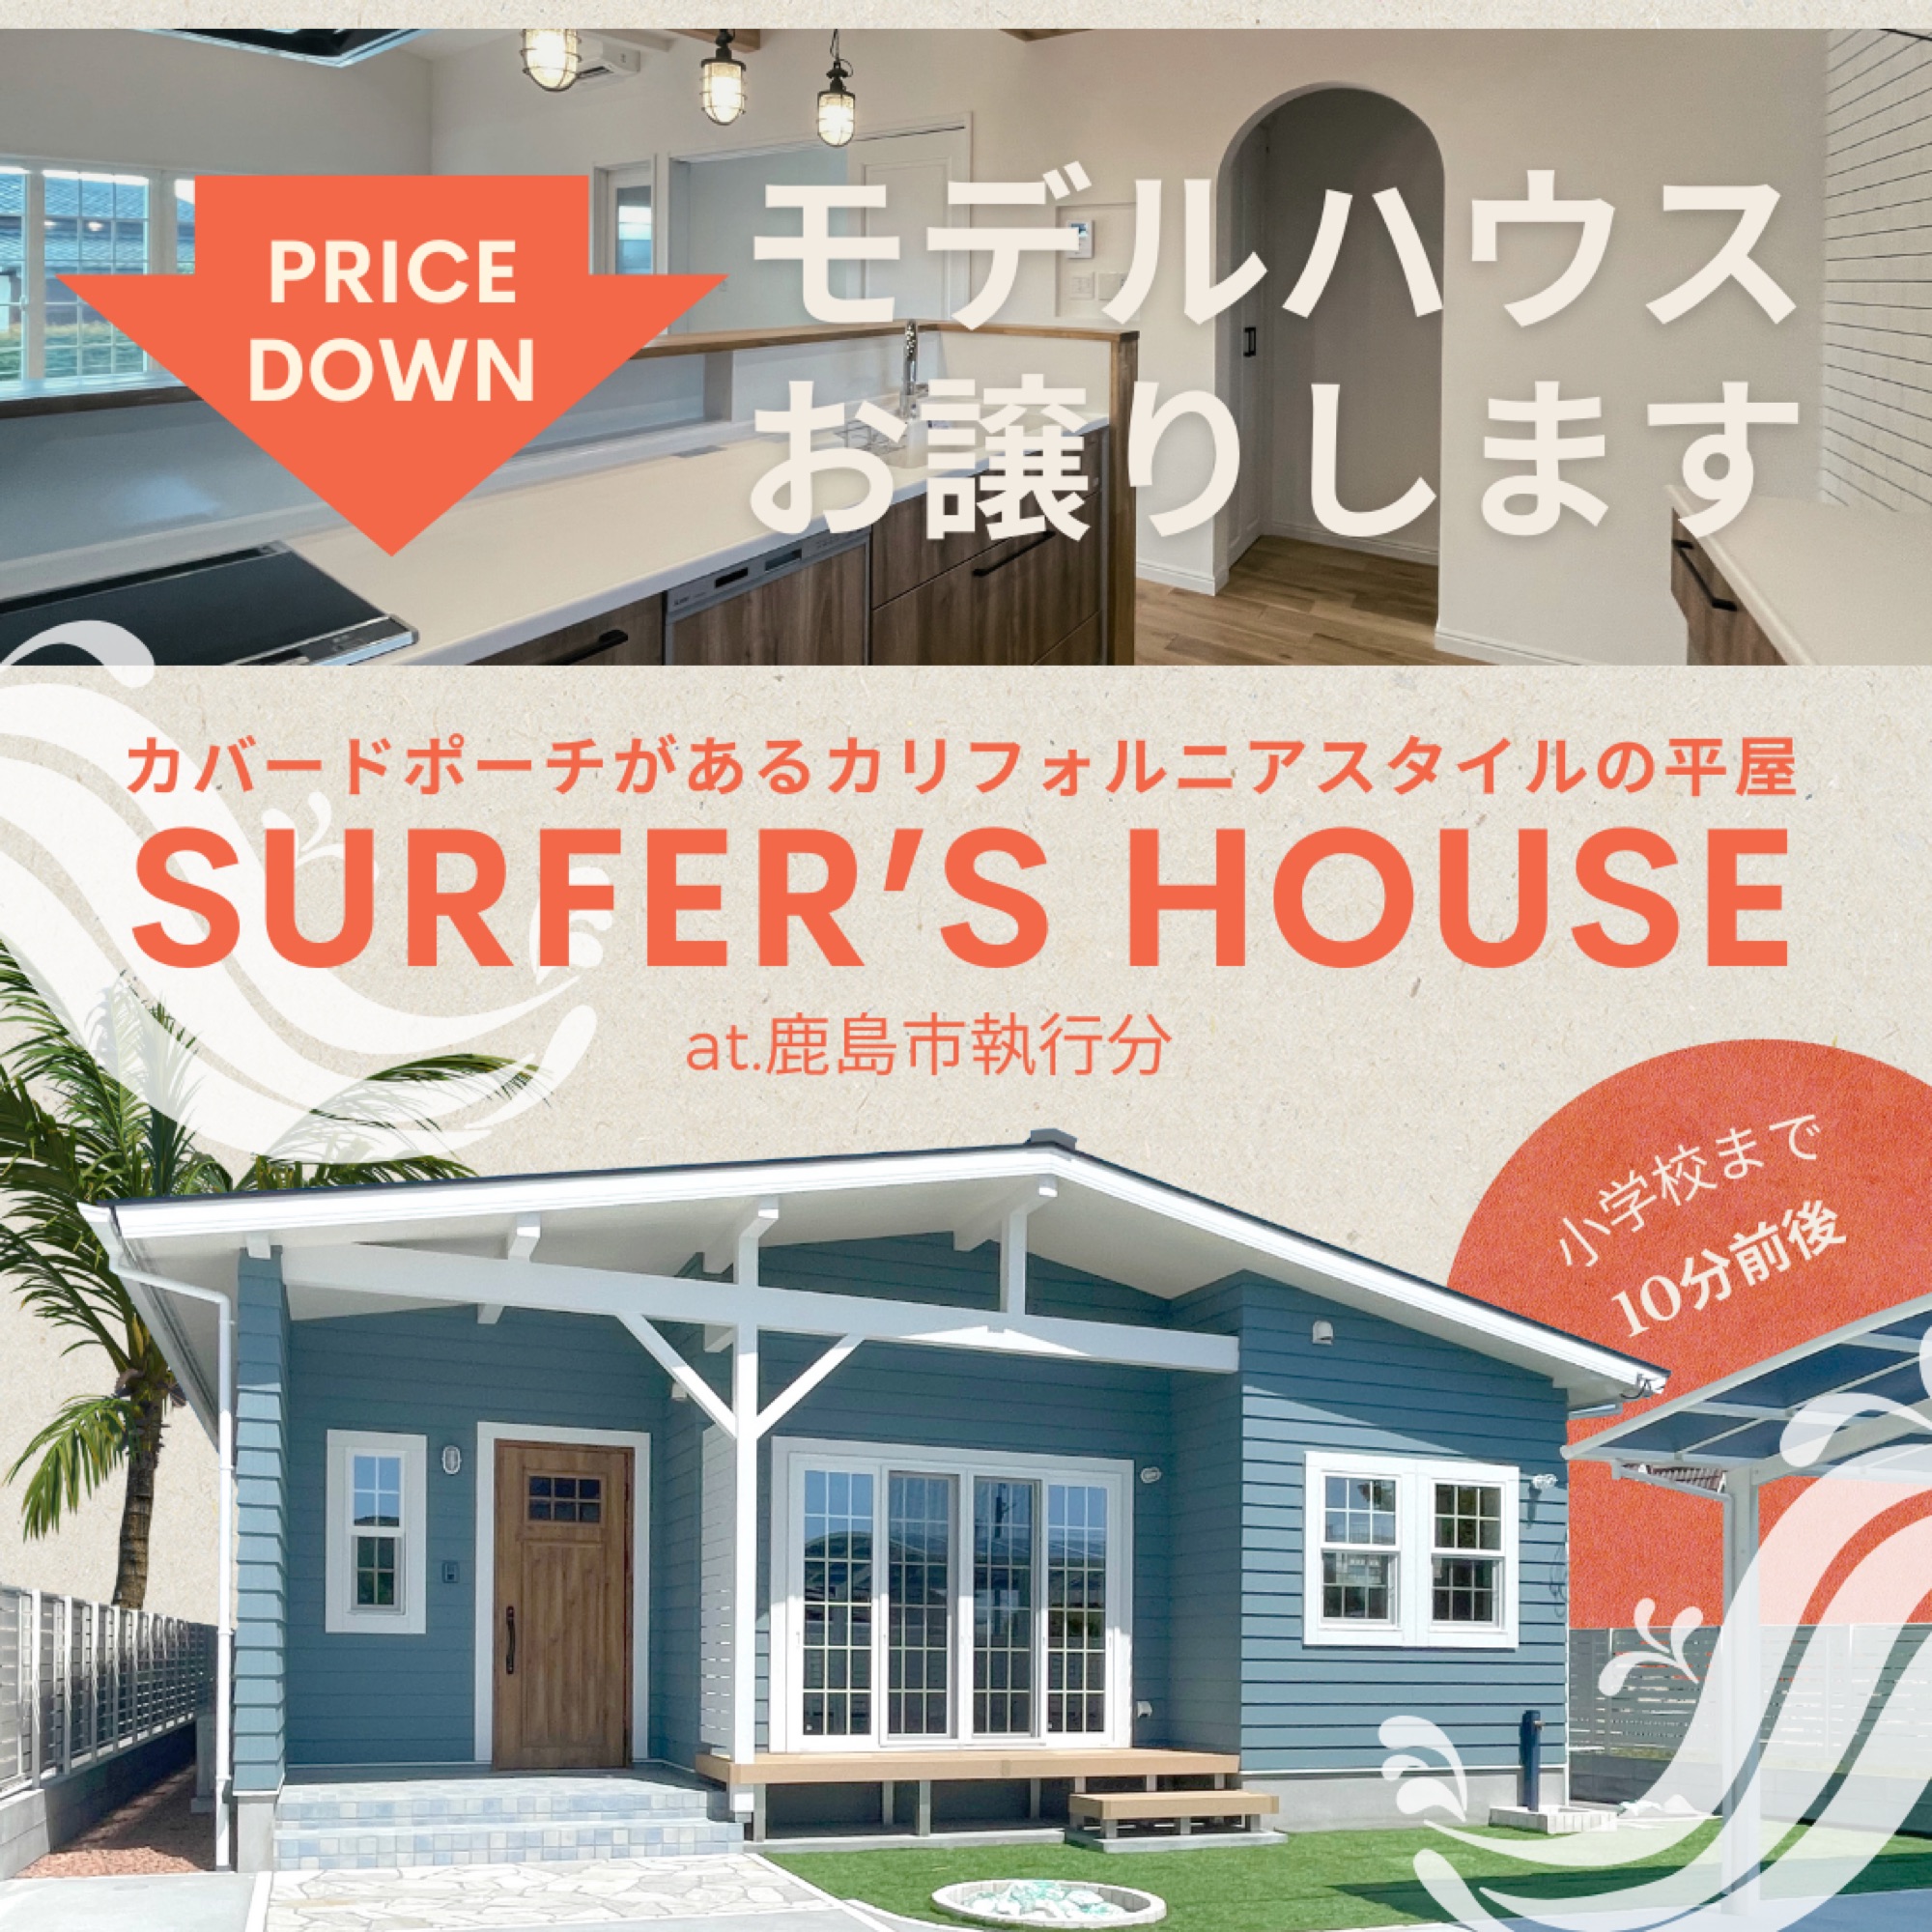     【鹿島市執行分】新築建売住宅モデルハウス【1棟ご成約済み】